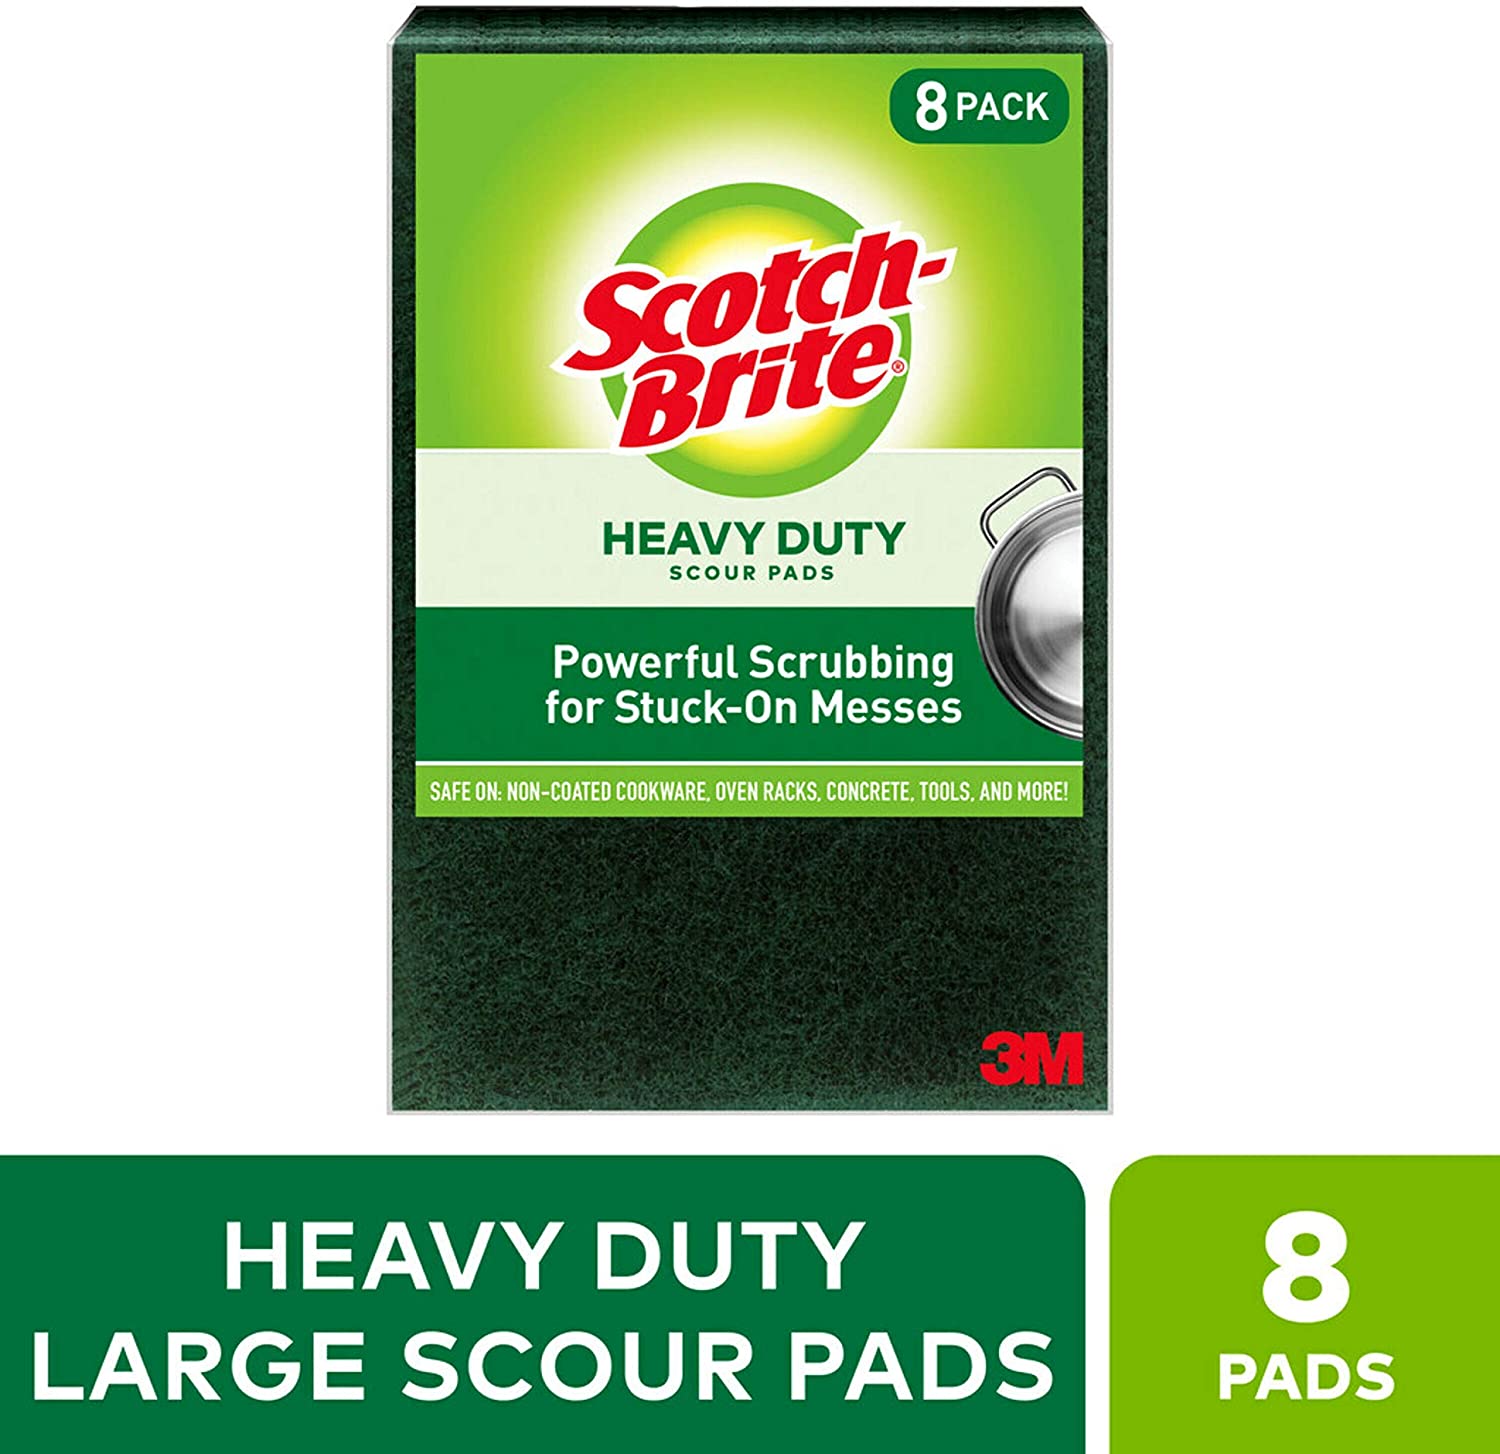 Scotch-Brite Heavy Duty Scour, Large, 8 Count -- $4.98